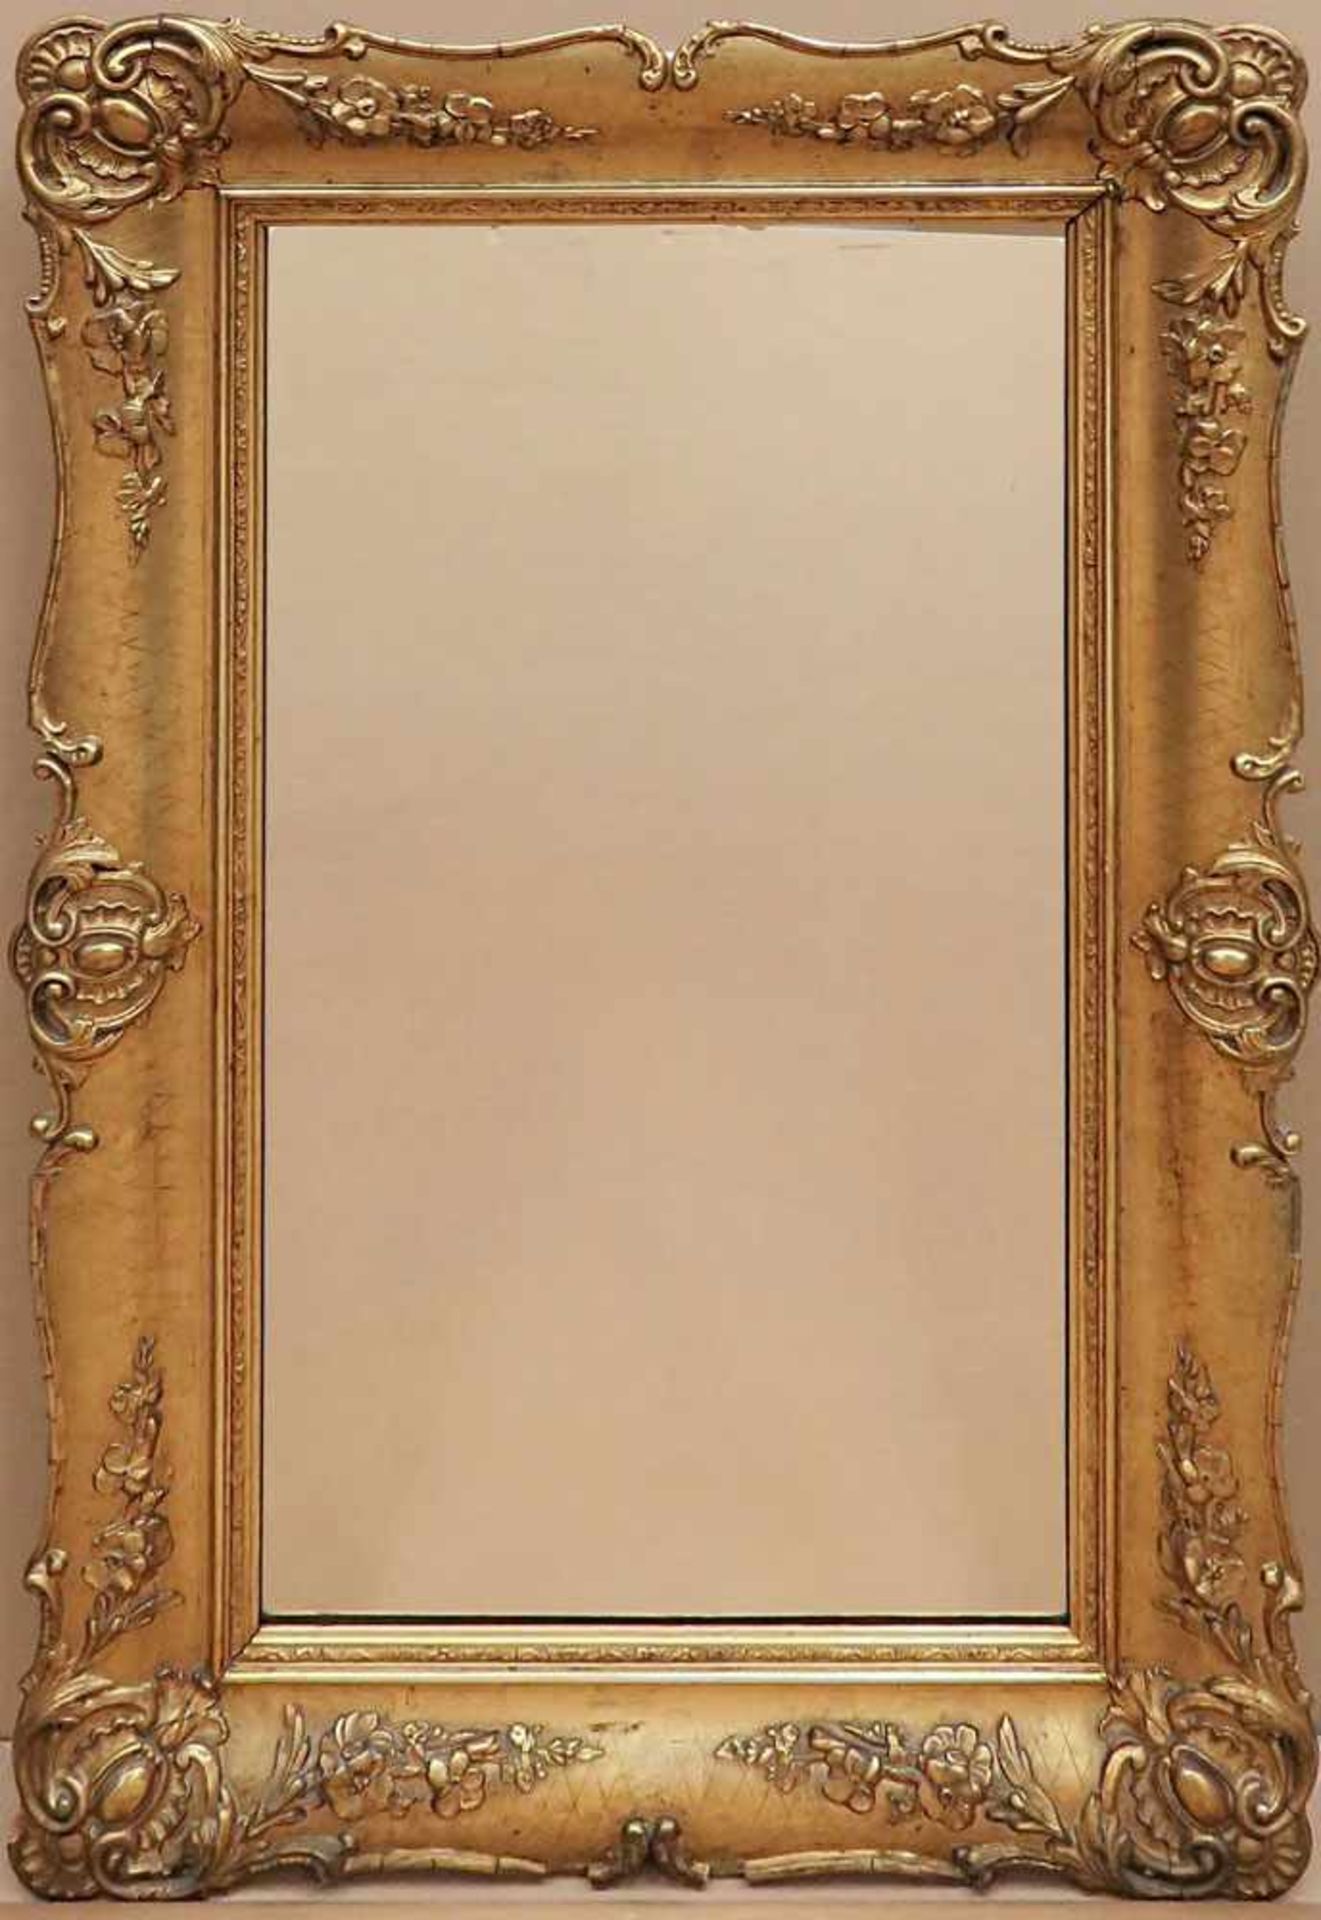 Spiegel Barockstil. Holz, Masse, goldfarben, Spiegelglas. Geschweifte Form mit Rocaillen- und